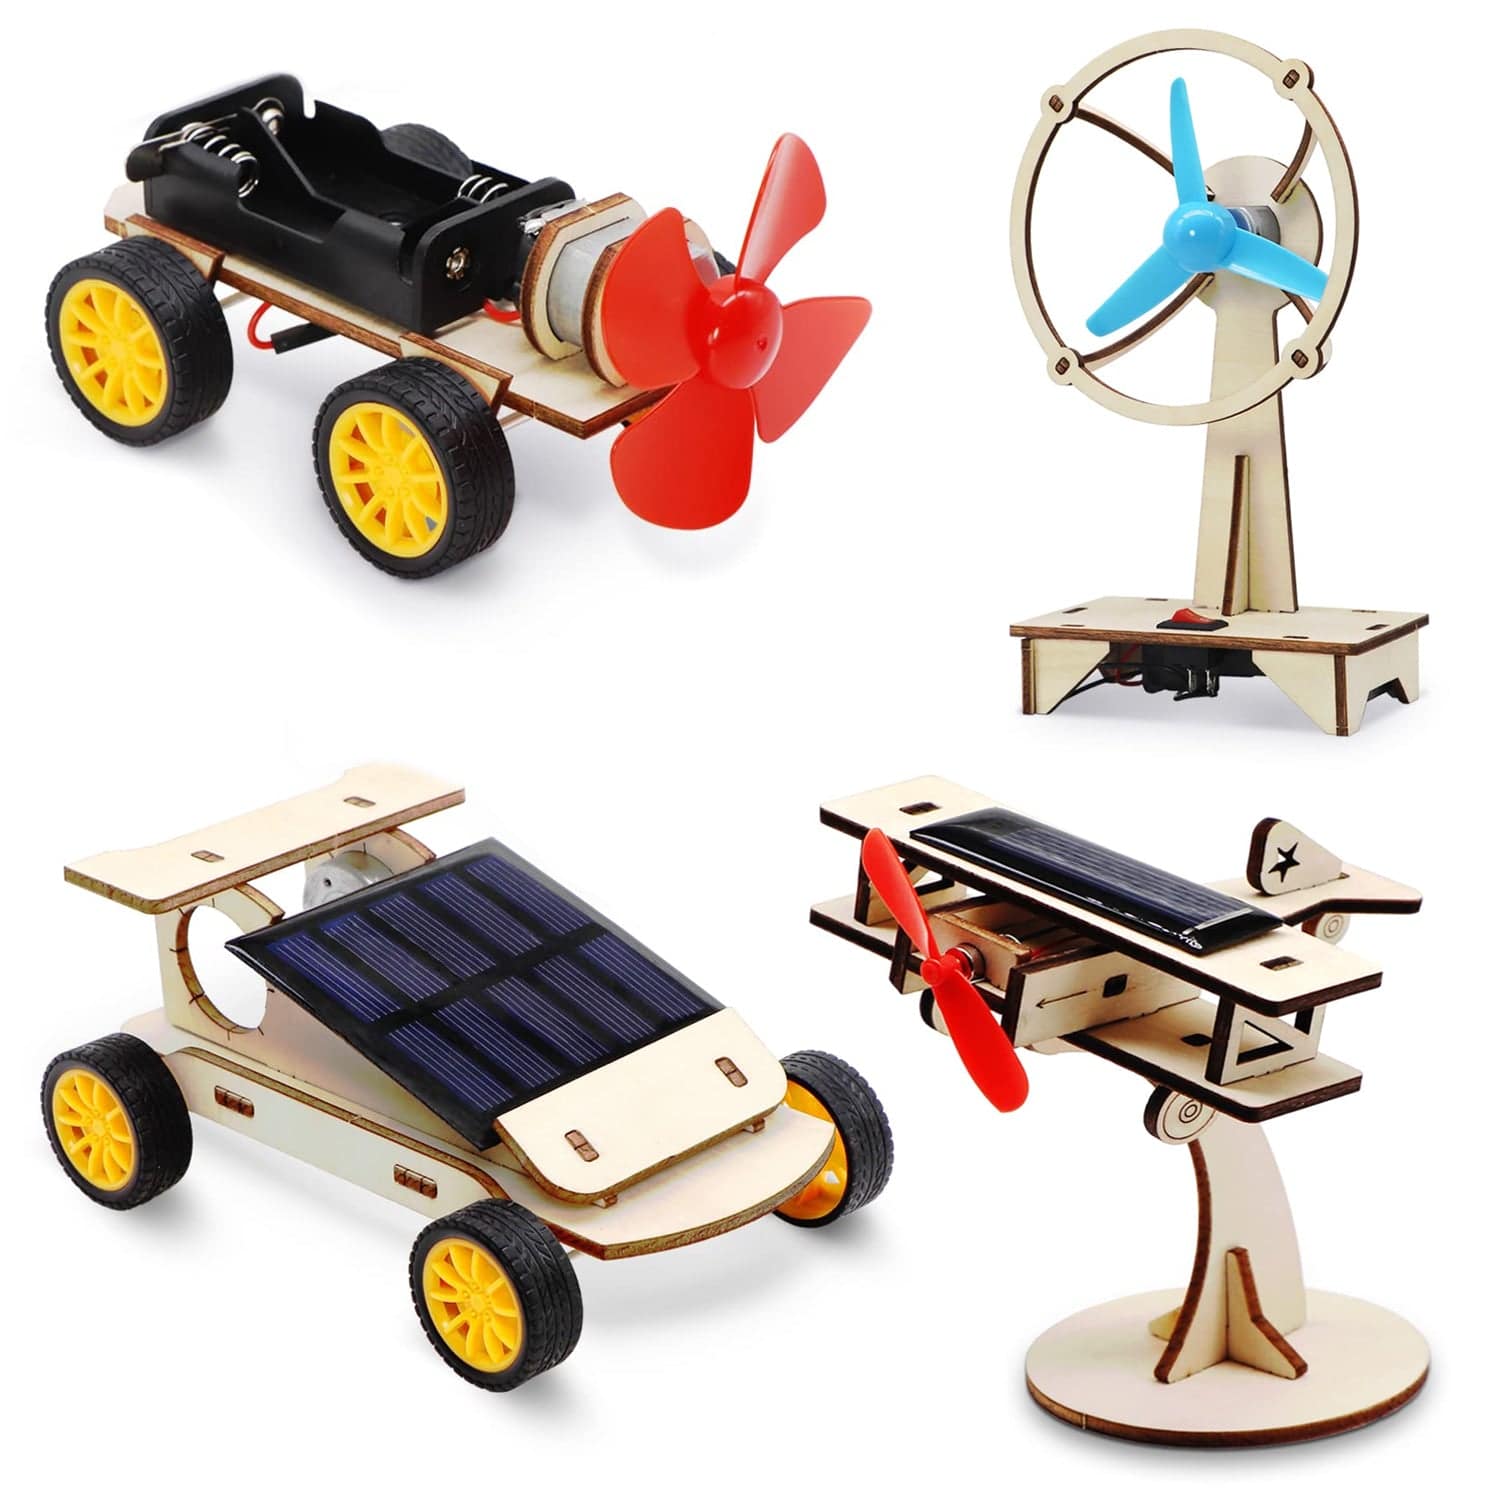 DIY Wooden 4-in-1 STEM Kit for Kids, Wooden Solar Power Kit